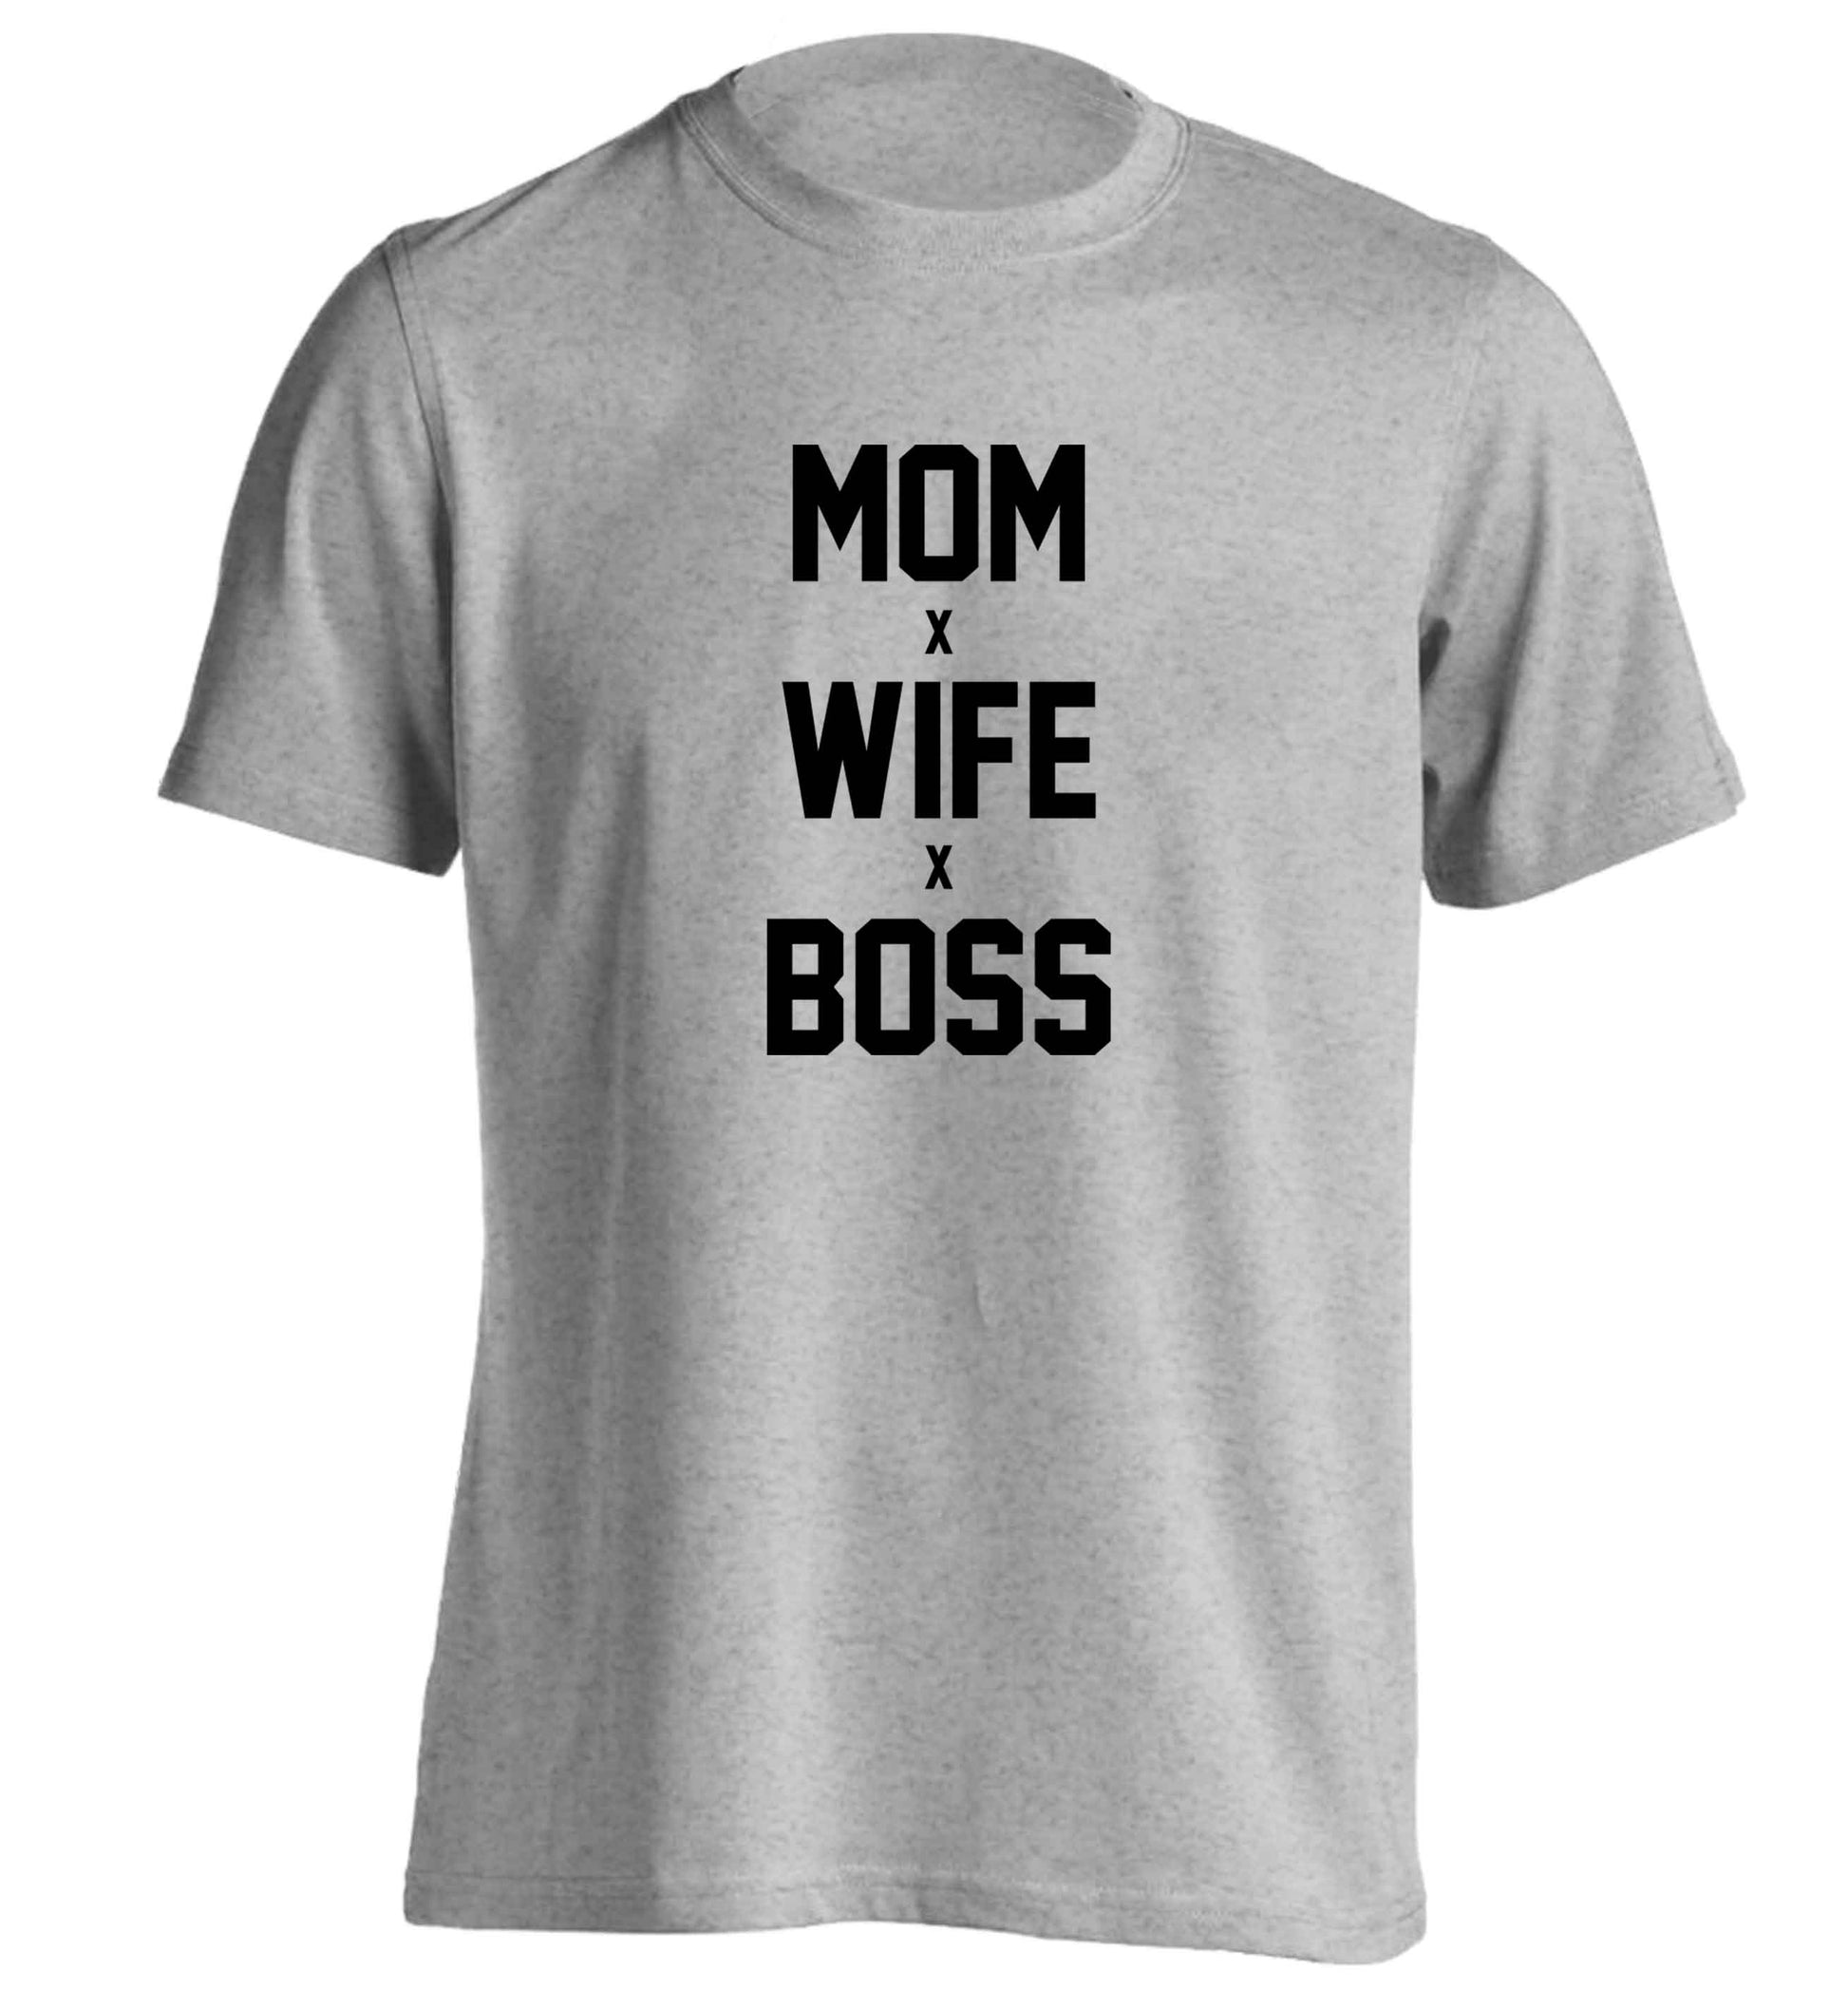 Mum wife boss adults unisex grey Tshirt 2XL